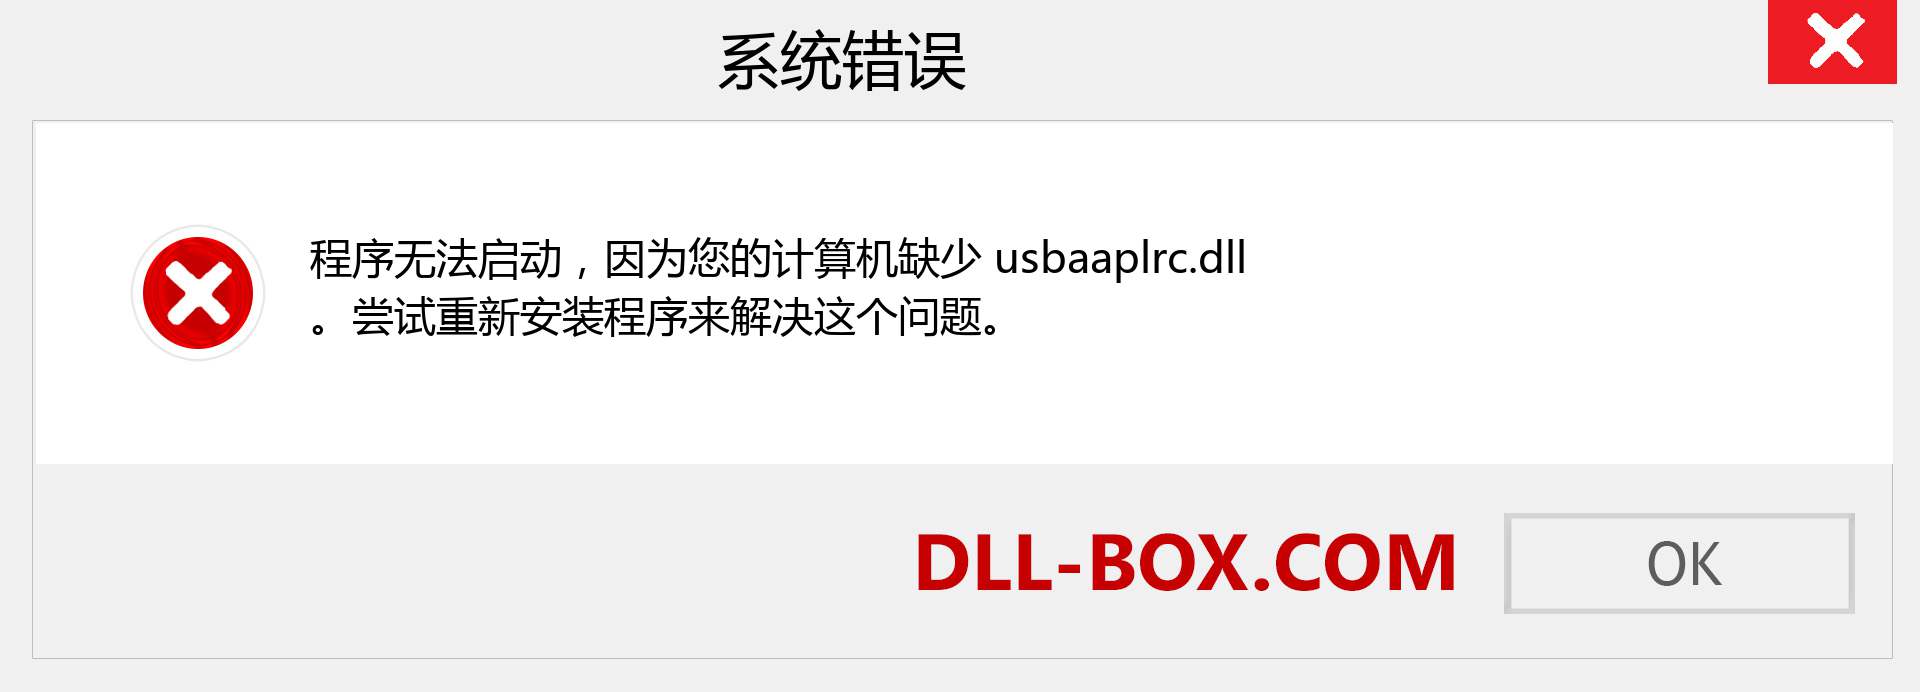 usbaaplrc.dll 文件丢失？。 适用于 Windows 7、8、10 的下载 - 修复 Windows、照片、图像上的 usbaaplrc dll 丢失错误